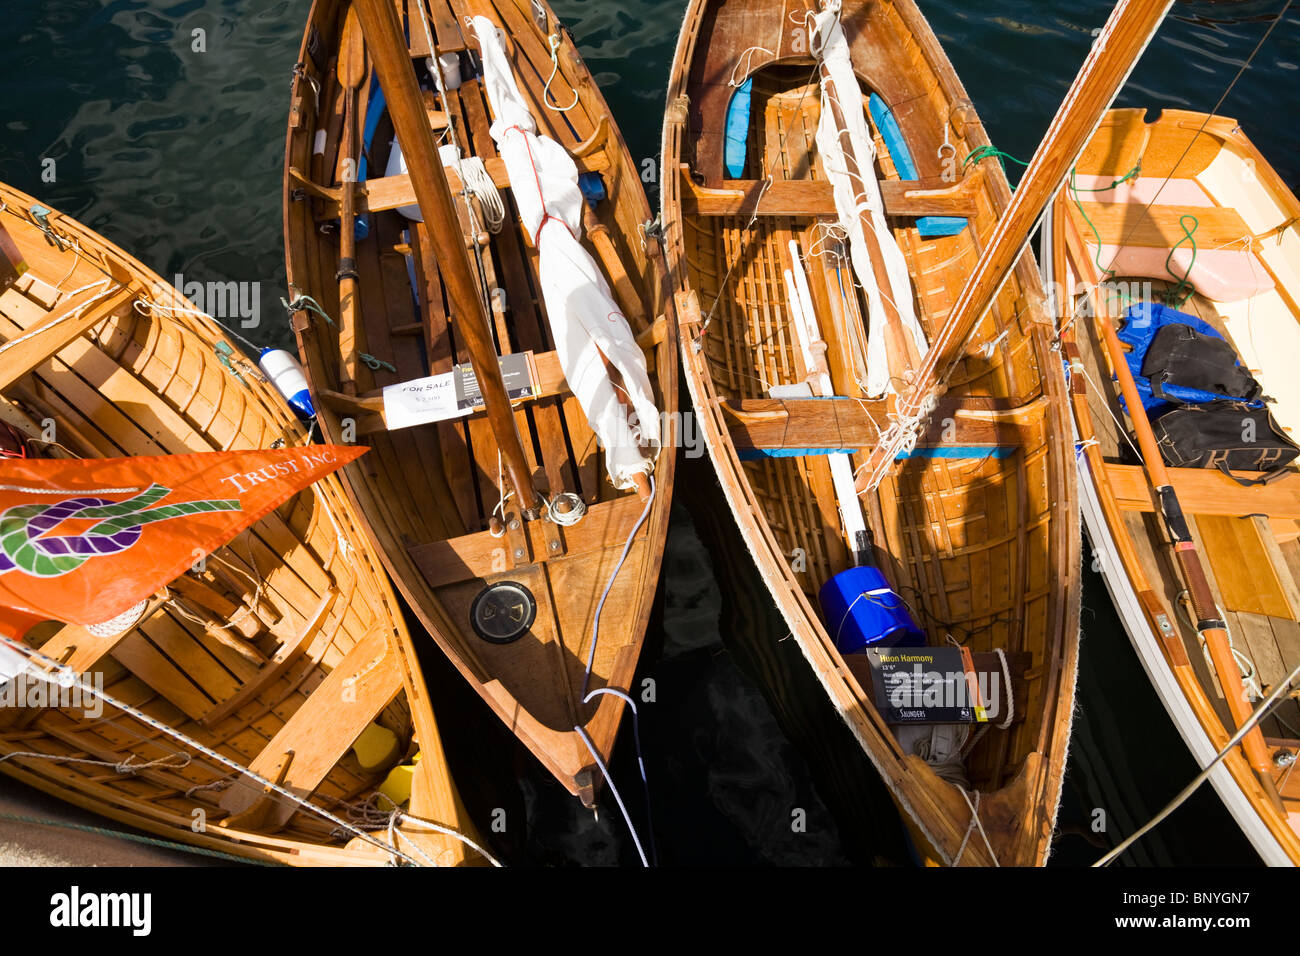 Des bateaux en bois à Constitution Dock, au cours de la Festival de bateaux en bois. Hobart, Tasmanie, Australie Banque D'Images